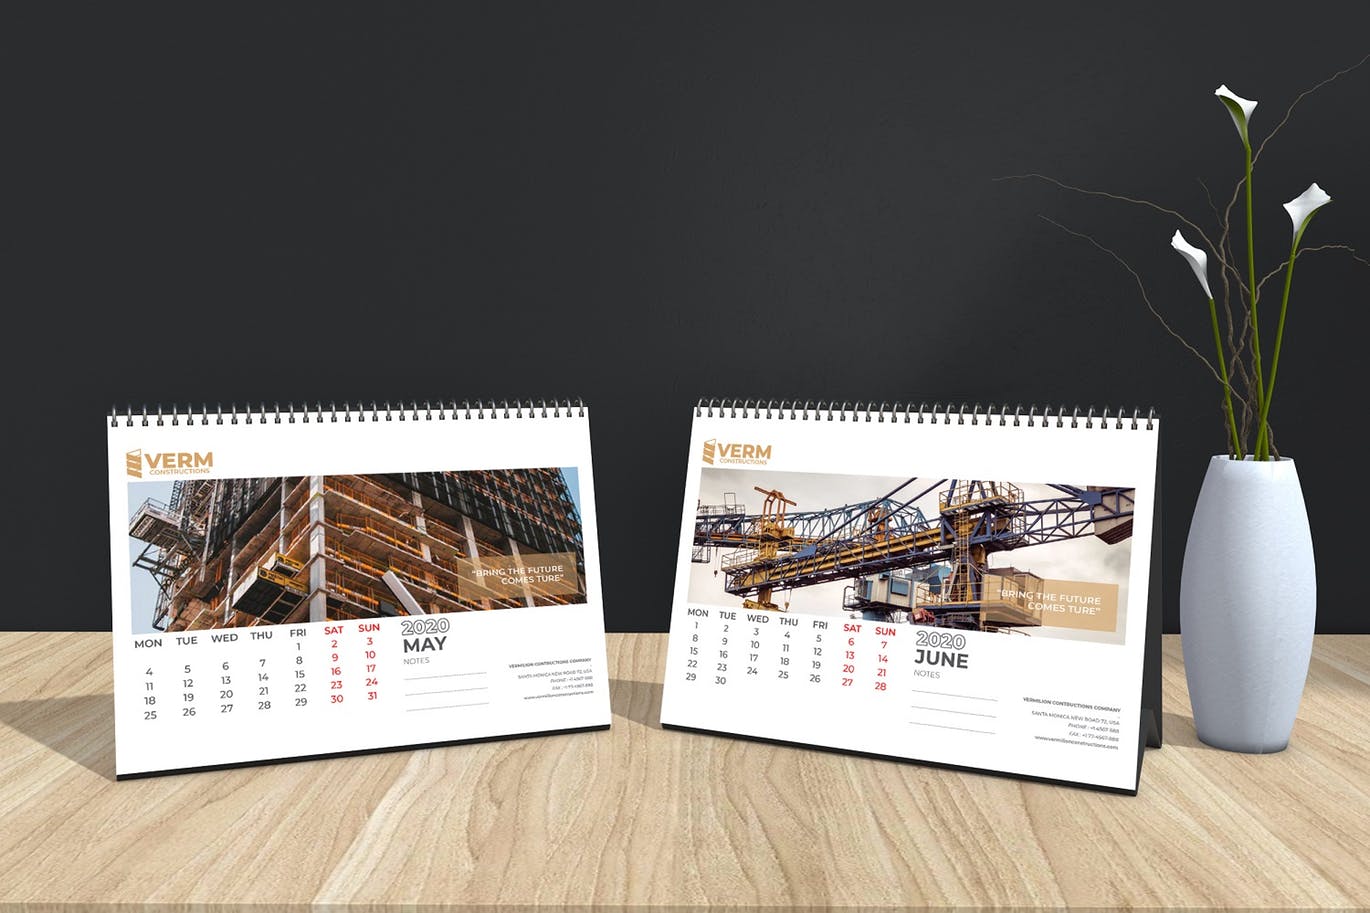 2020年建筑主题台历&挂墙日历表设计模板 Construction Wall & Table Calendar 2020插图11